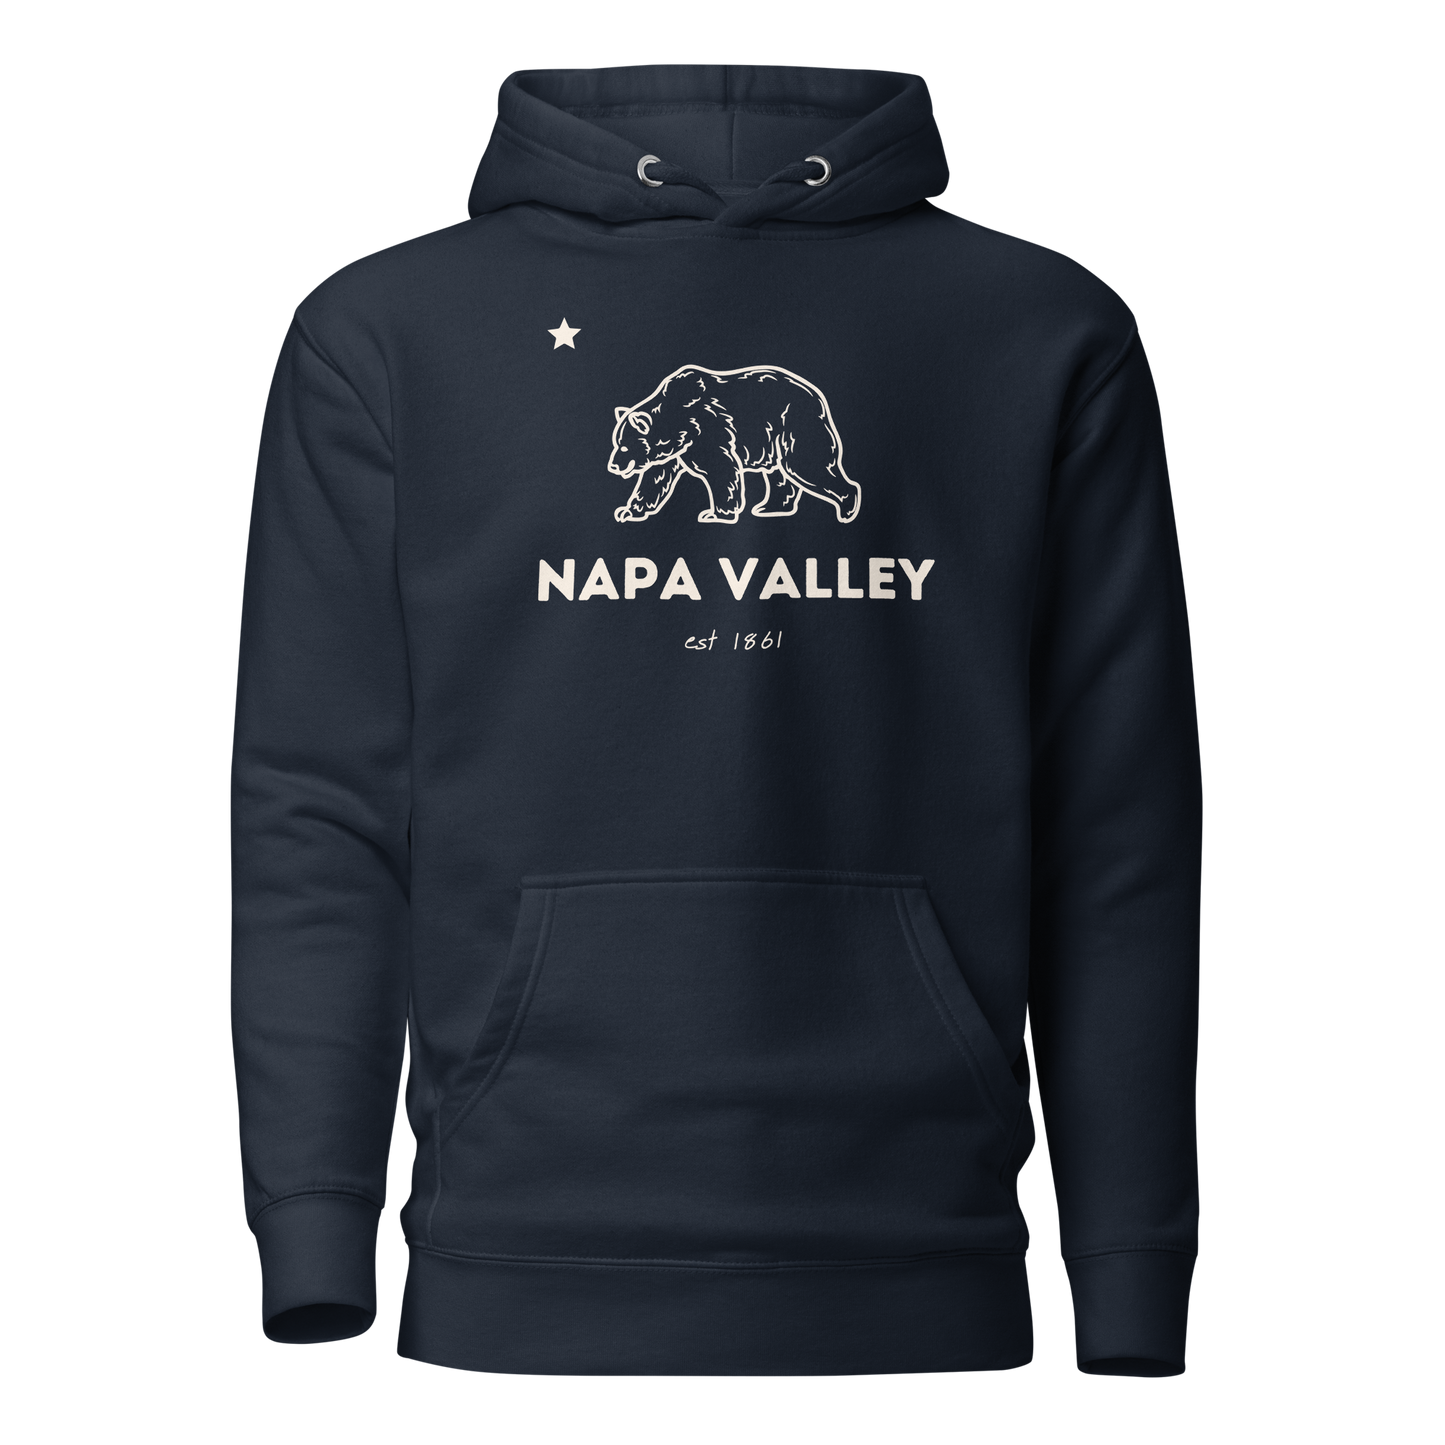 Napa Valley navy hoodie